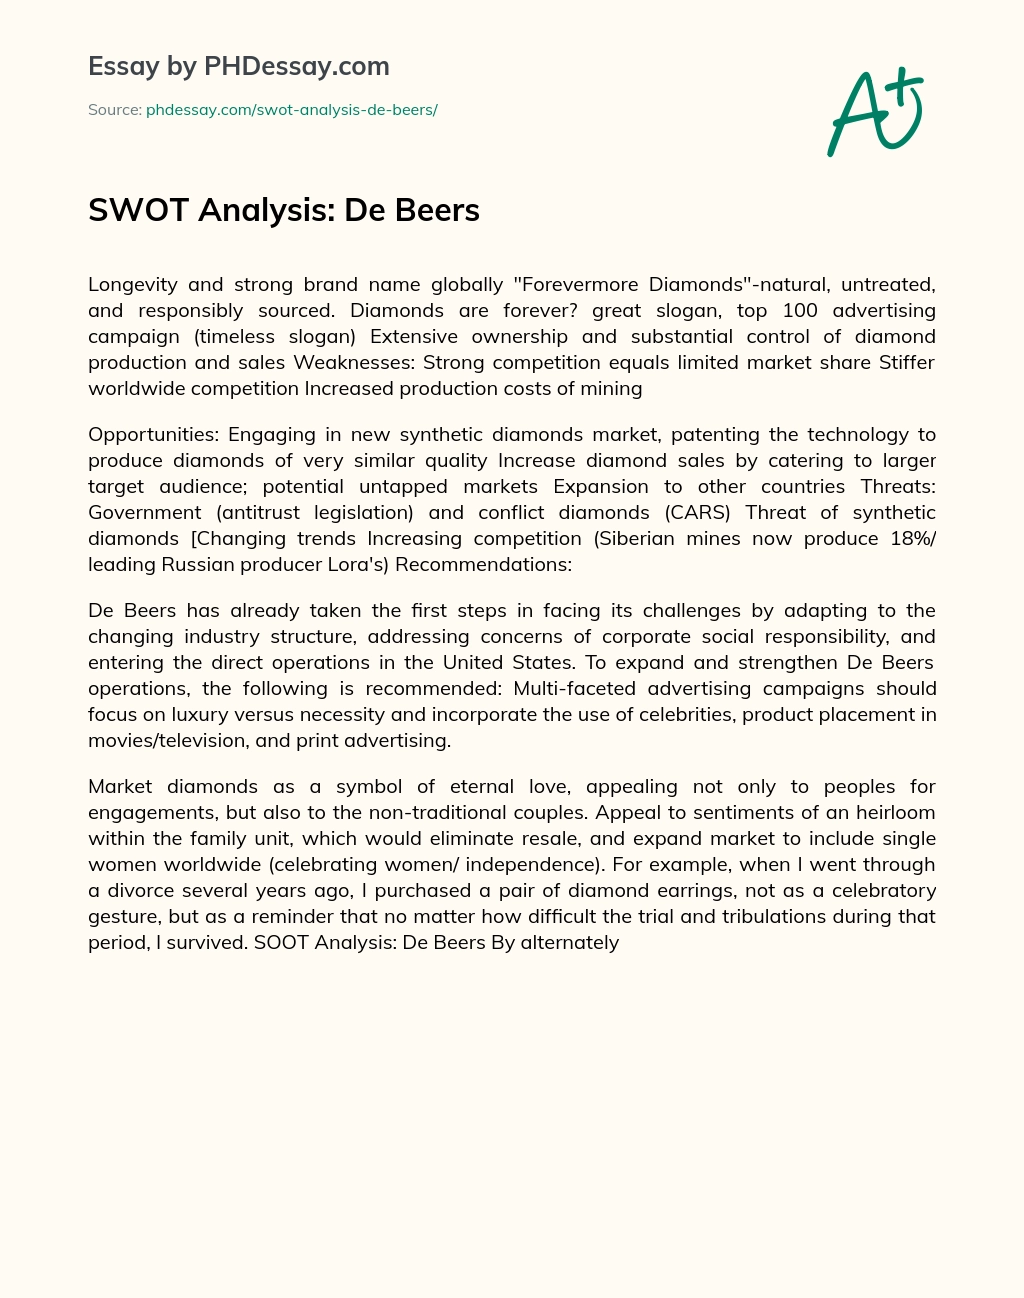 SWOT Analysis: De Beers essay